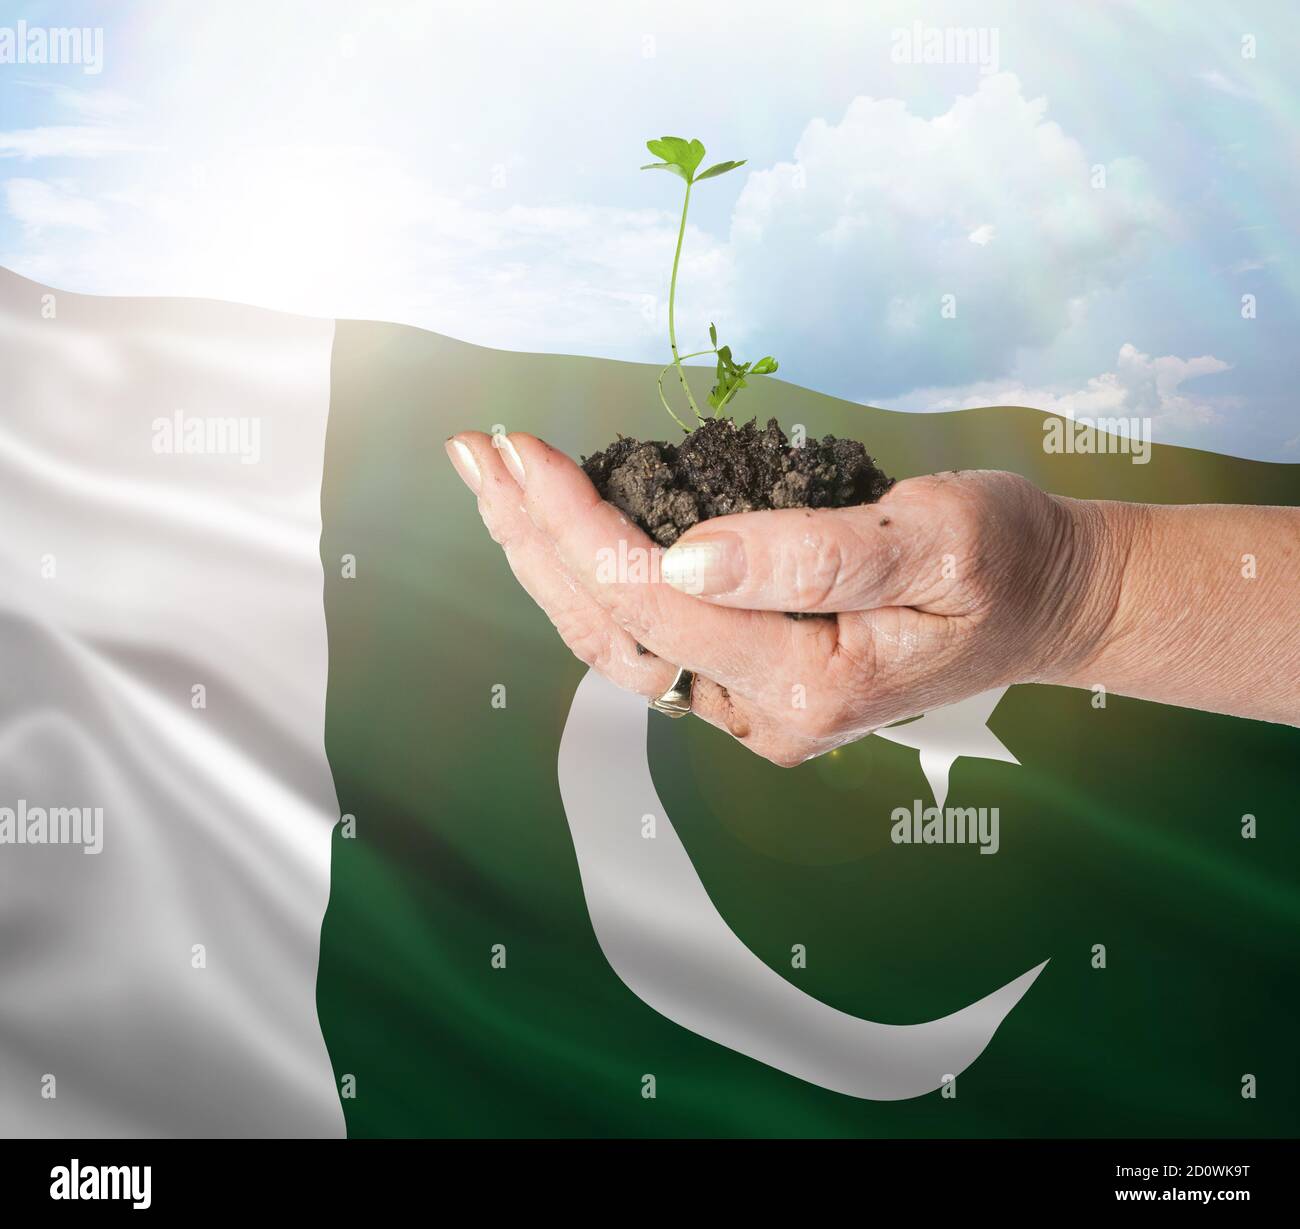 Pakistán crecimiento y nuevo comienzo. Concepto de energía renovable verde y ecología. Mano sosteniendo planta joven. Foto de stock